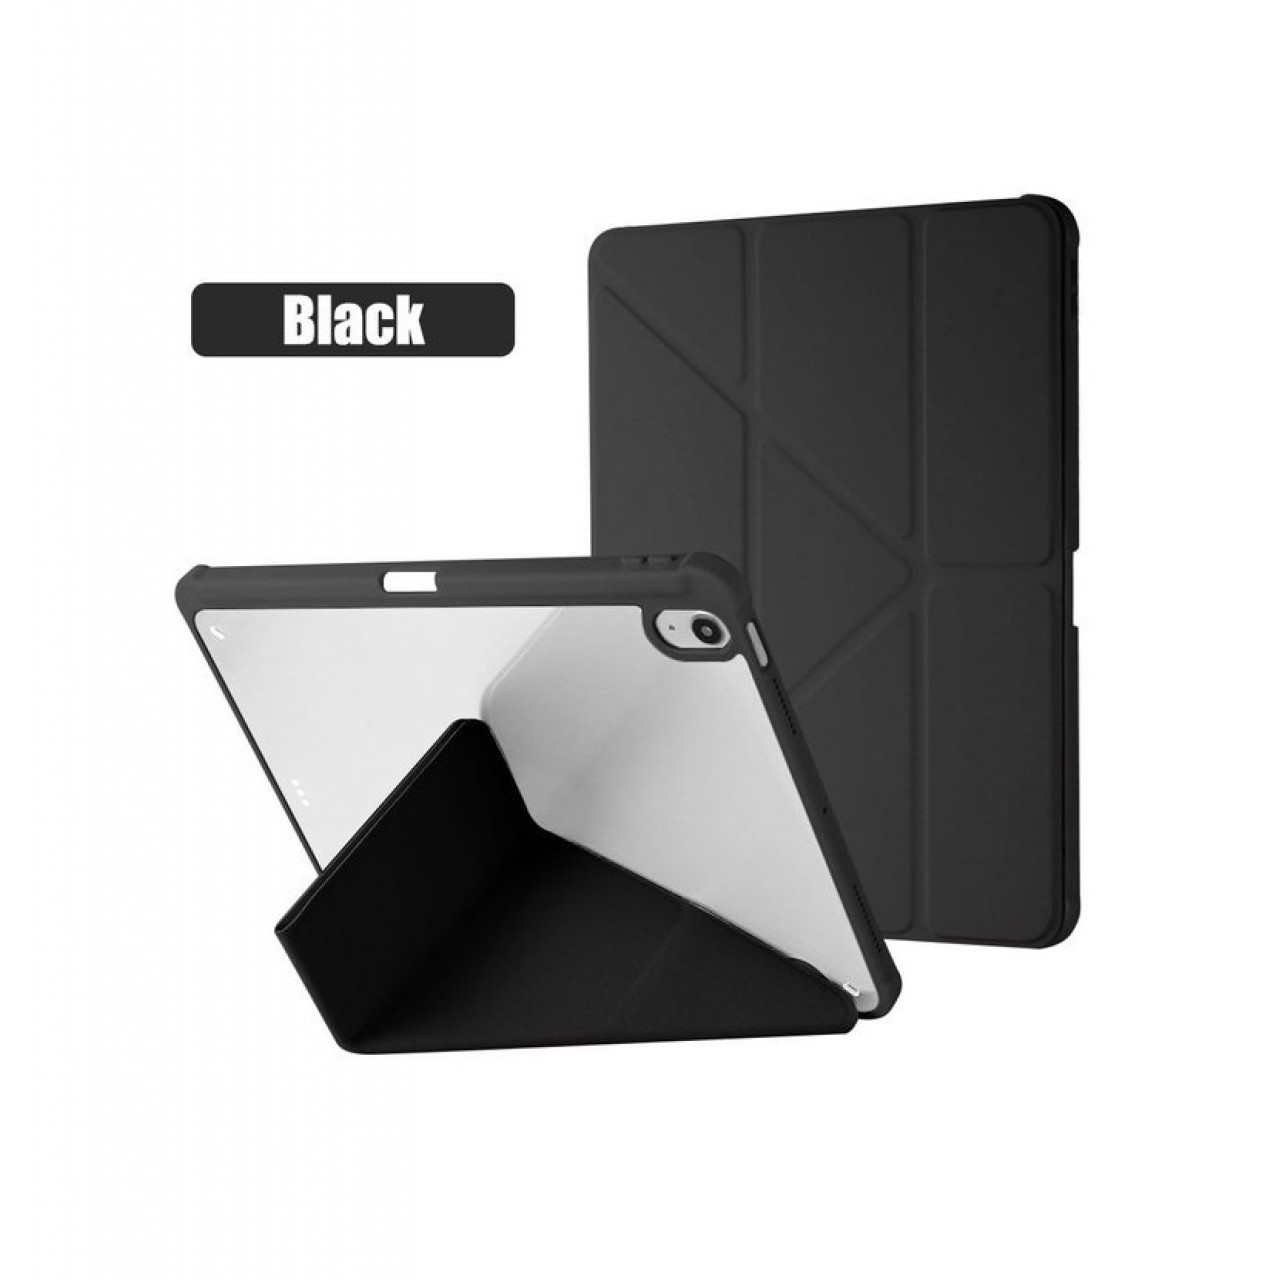 Θήκη Τάμπλετ Μαγνητική Apple iPad Air 4 - 5 10.9 inch με Προστασία Κάμερας και Θέση για Γραφίδα - Black